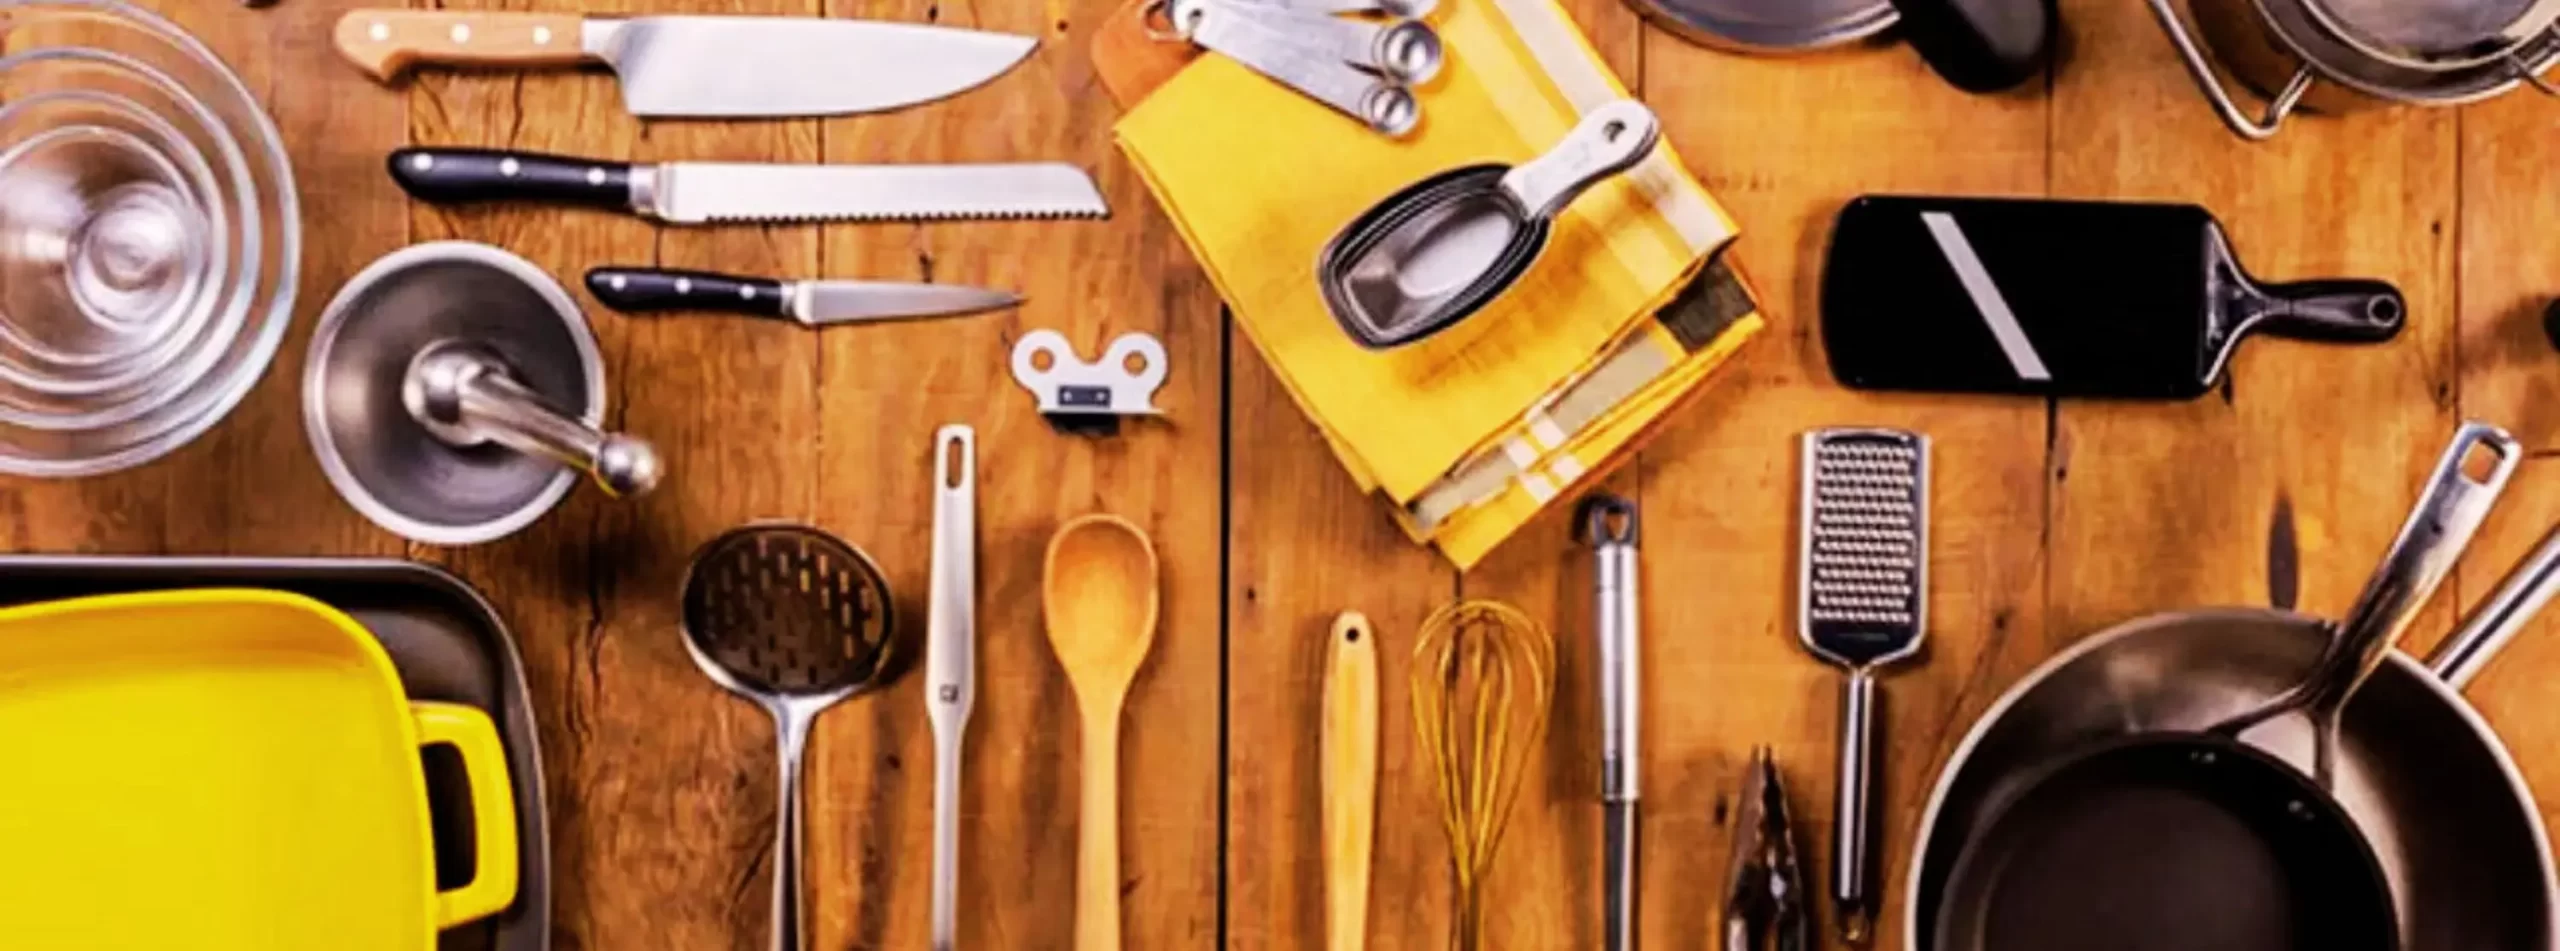 Saiba quais são os utensílios de cozinha indispensáveis para sua casa